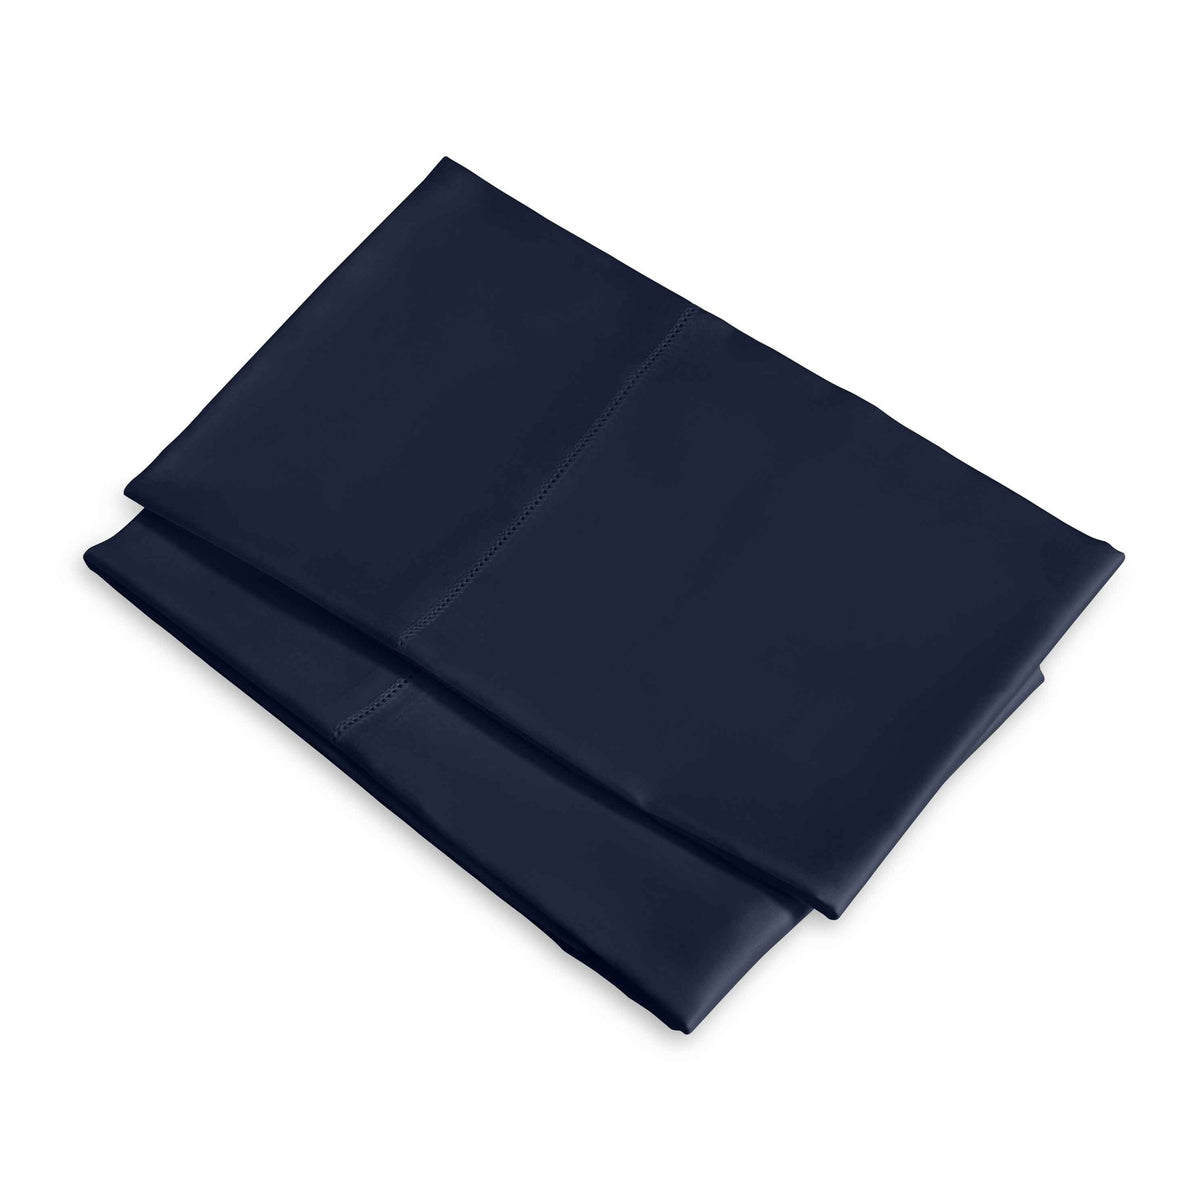 Clear Image of Signoria Raffaello Pillowcases in Midnight Blue Color